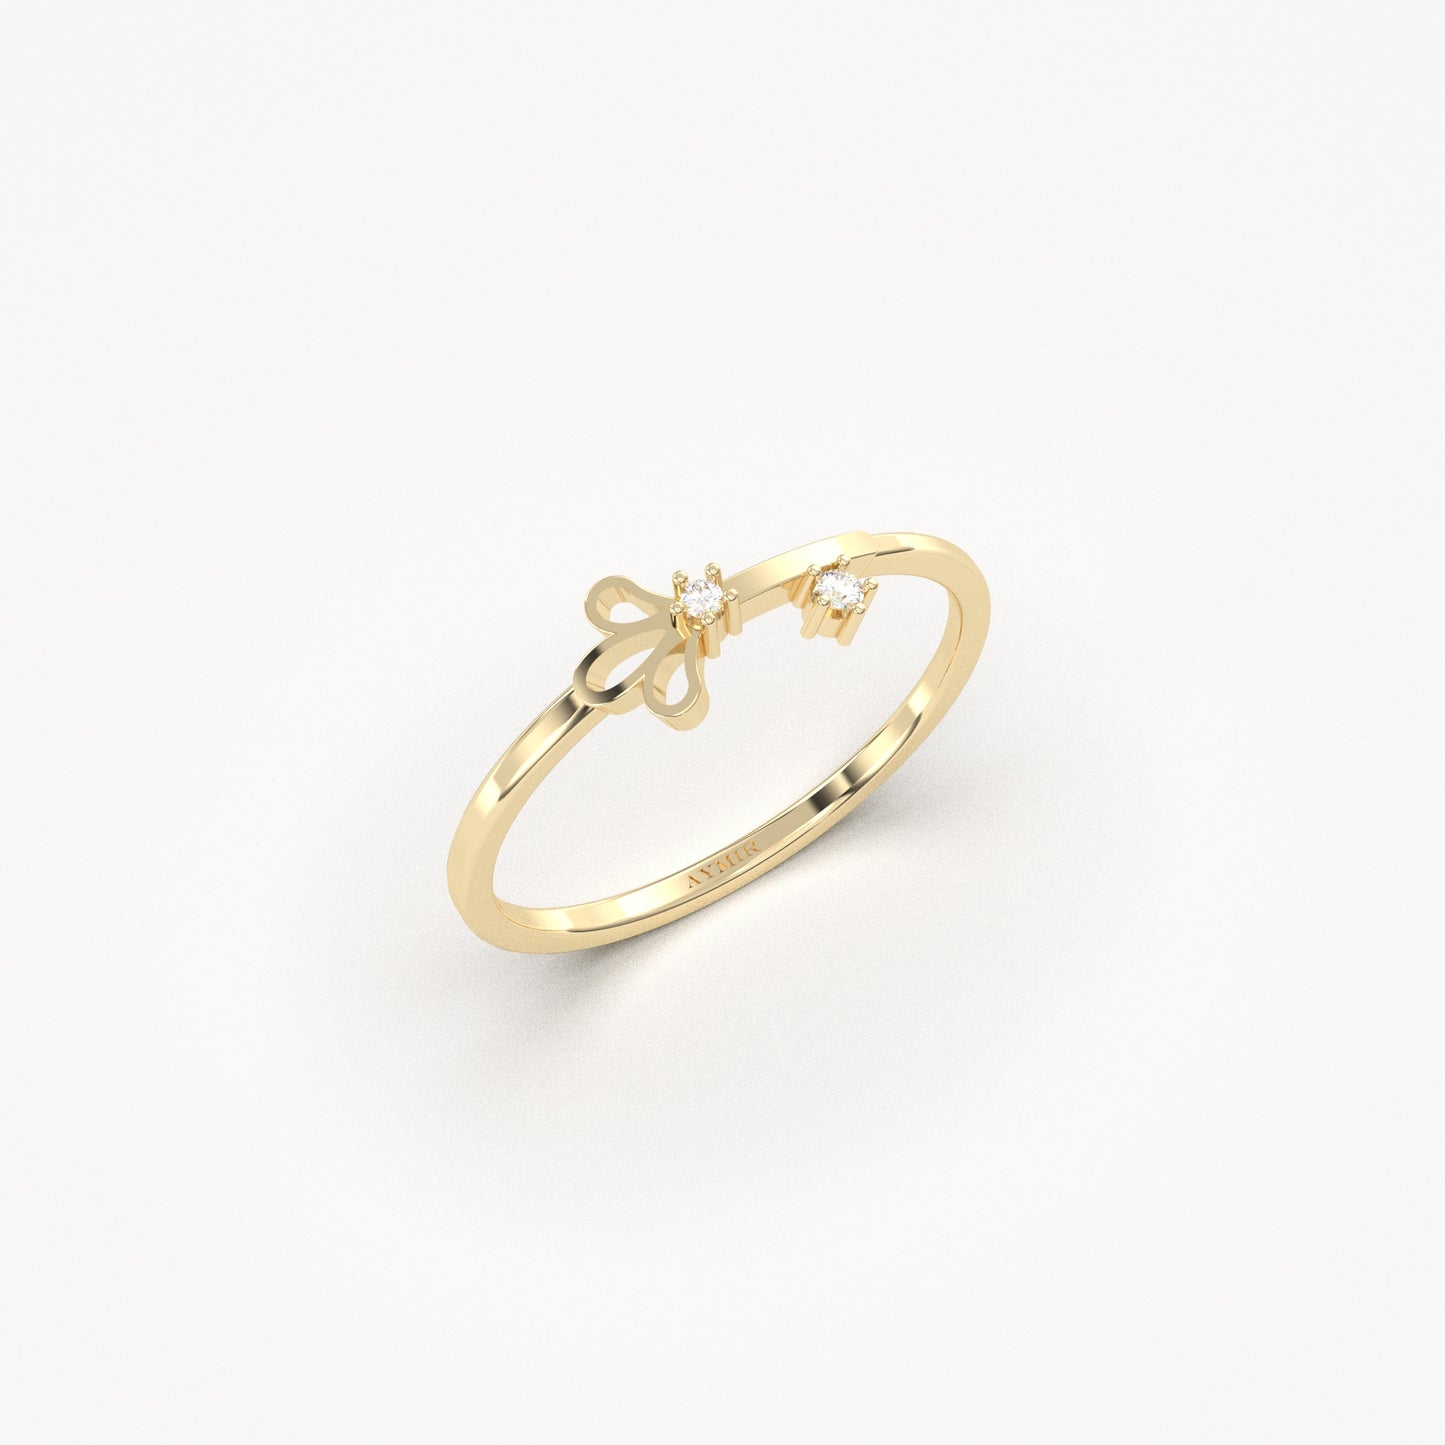 18K Gold Stack Mini Diamond Ring - 2S201